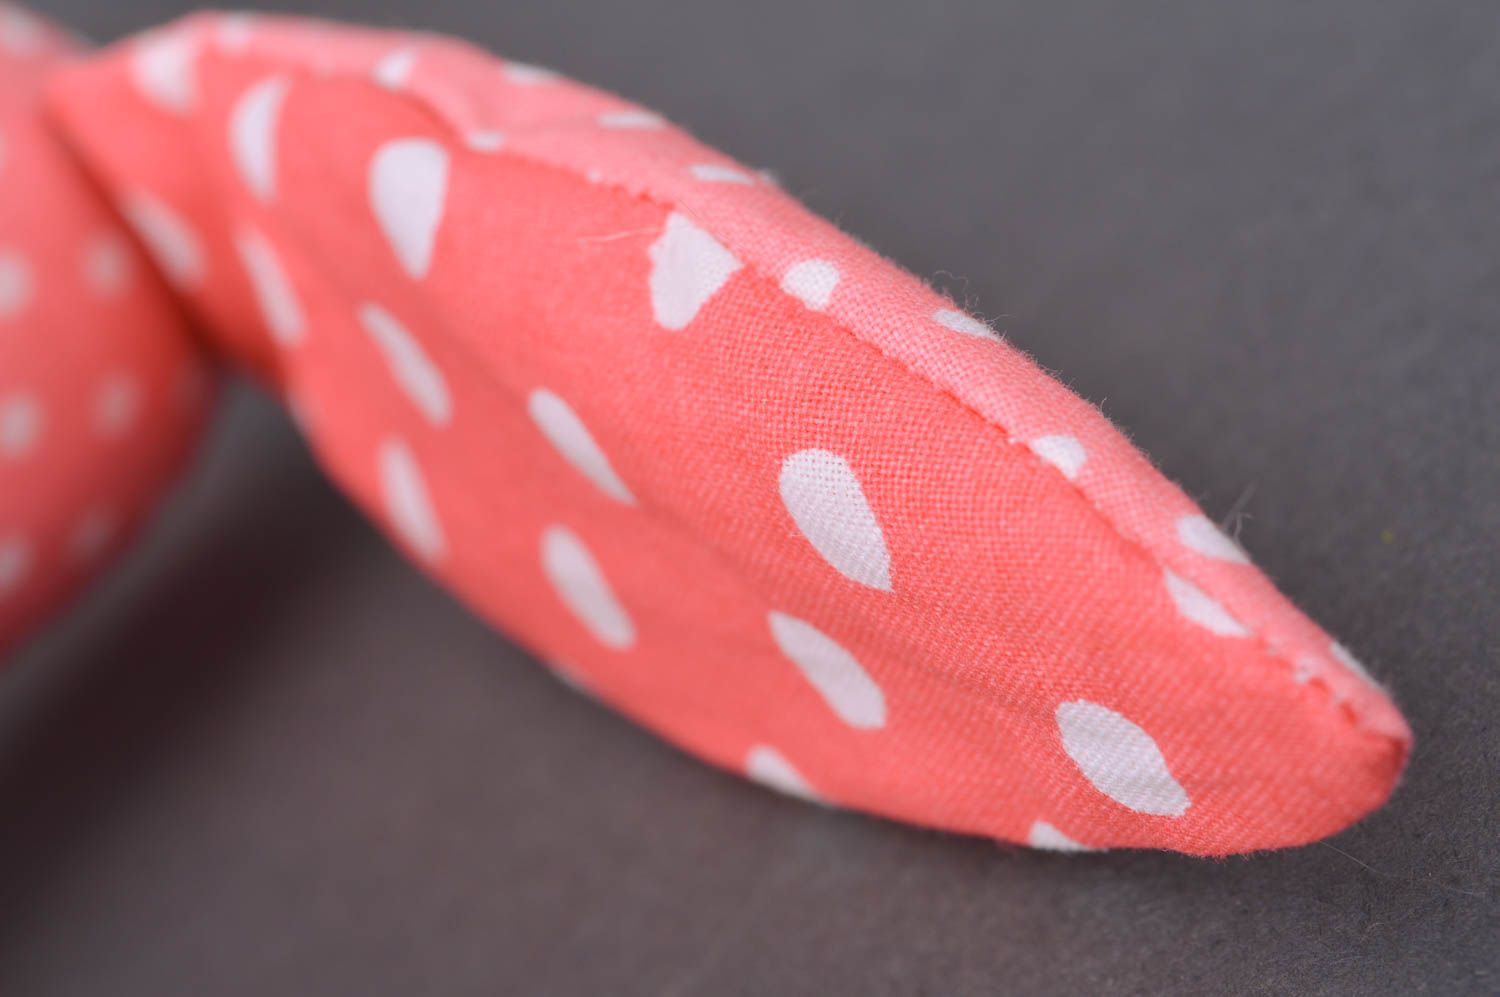 Jouet mou en tissu de coton fait main design original pour enfant Lapin rose photo 4